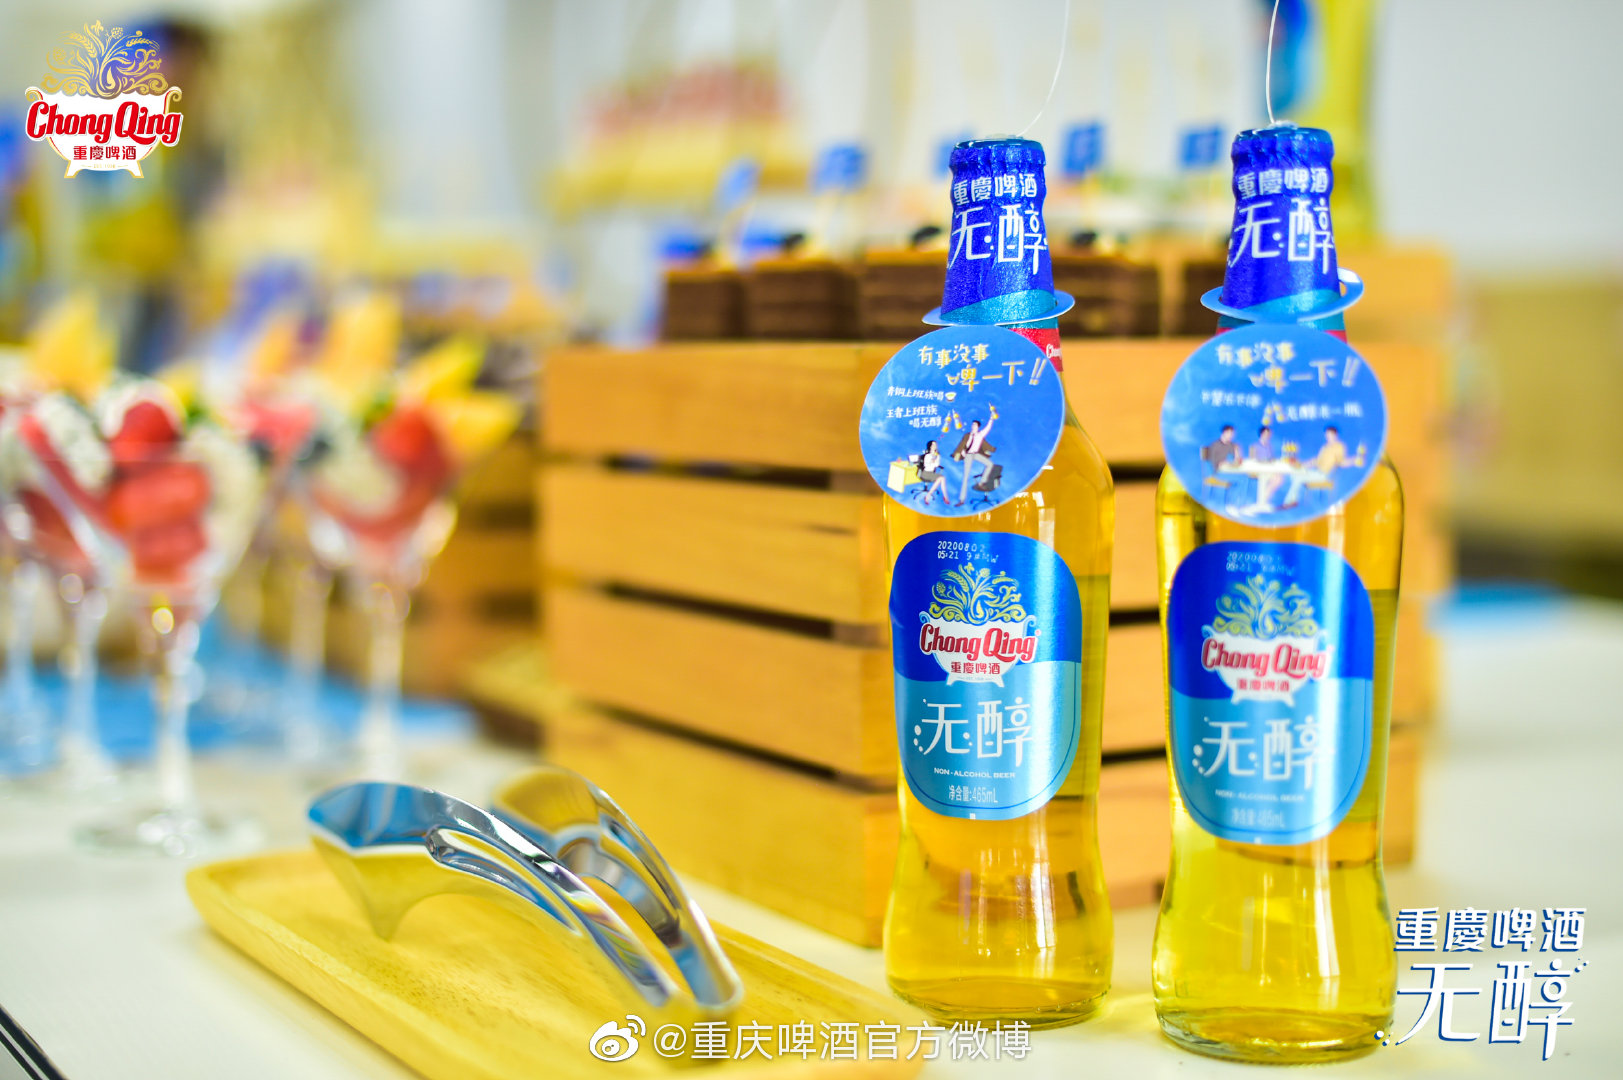 2020年8月,嘉士伯集团成员重庆啤酒推出一款无醇啤酒,并在餐饮渠道